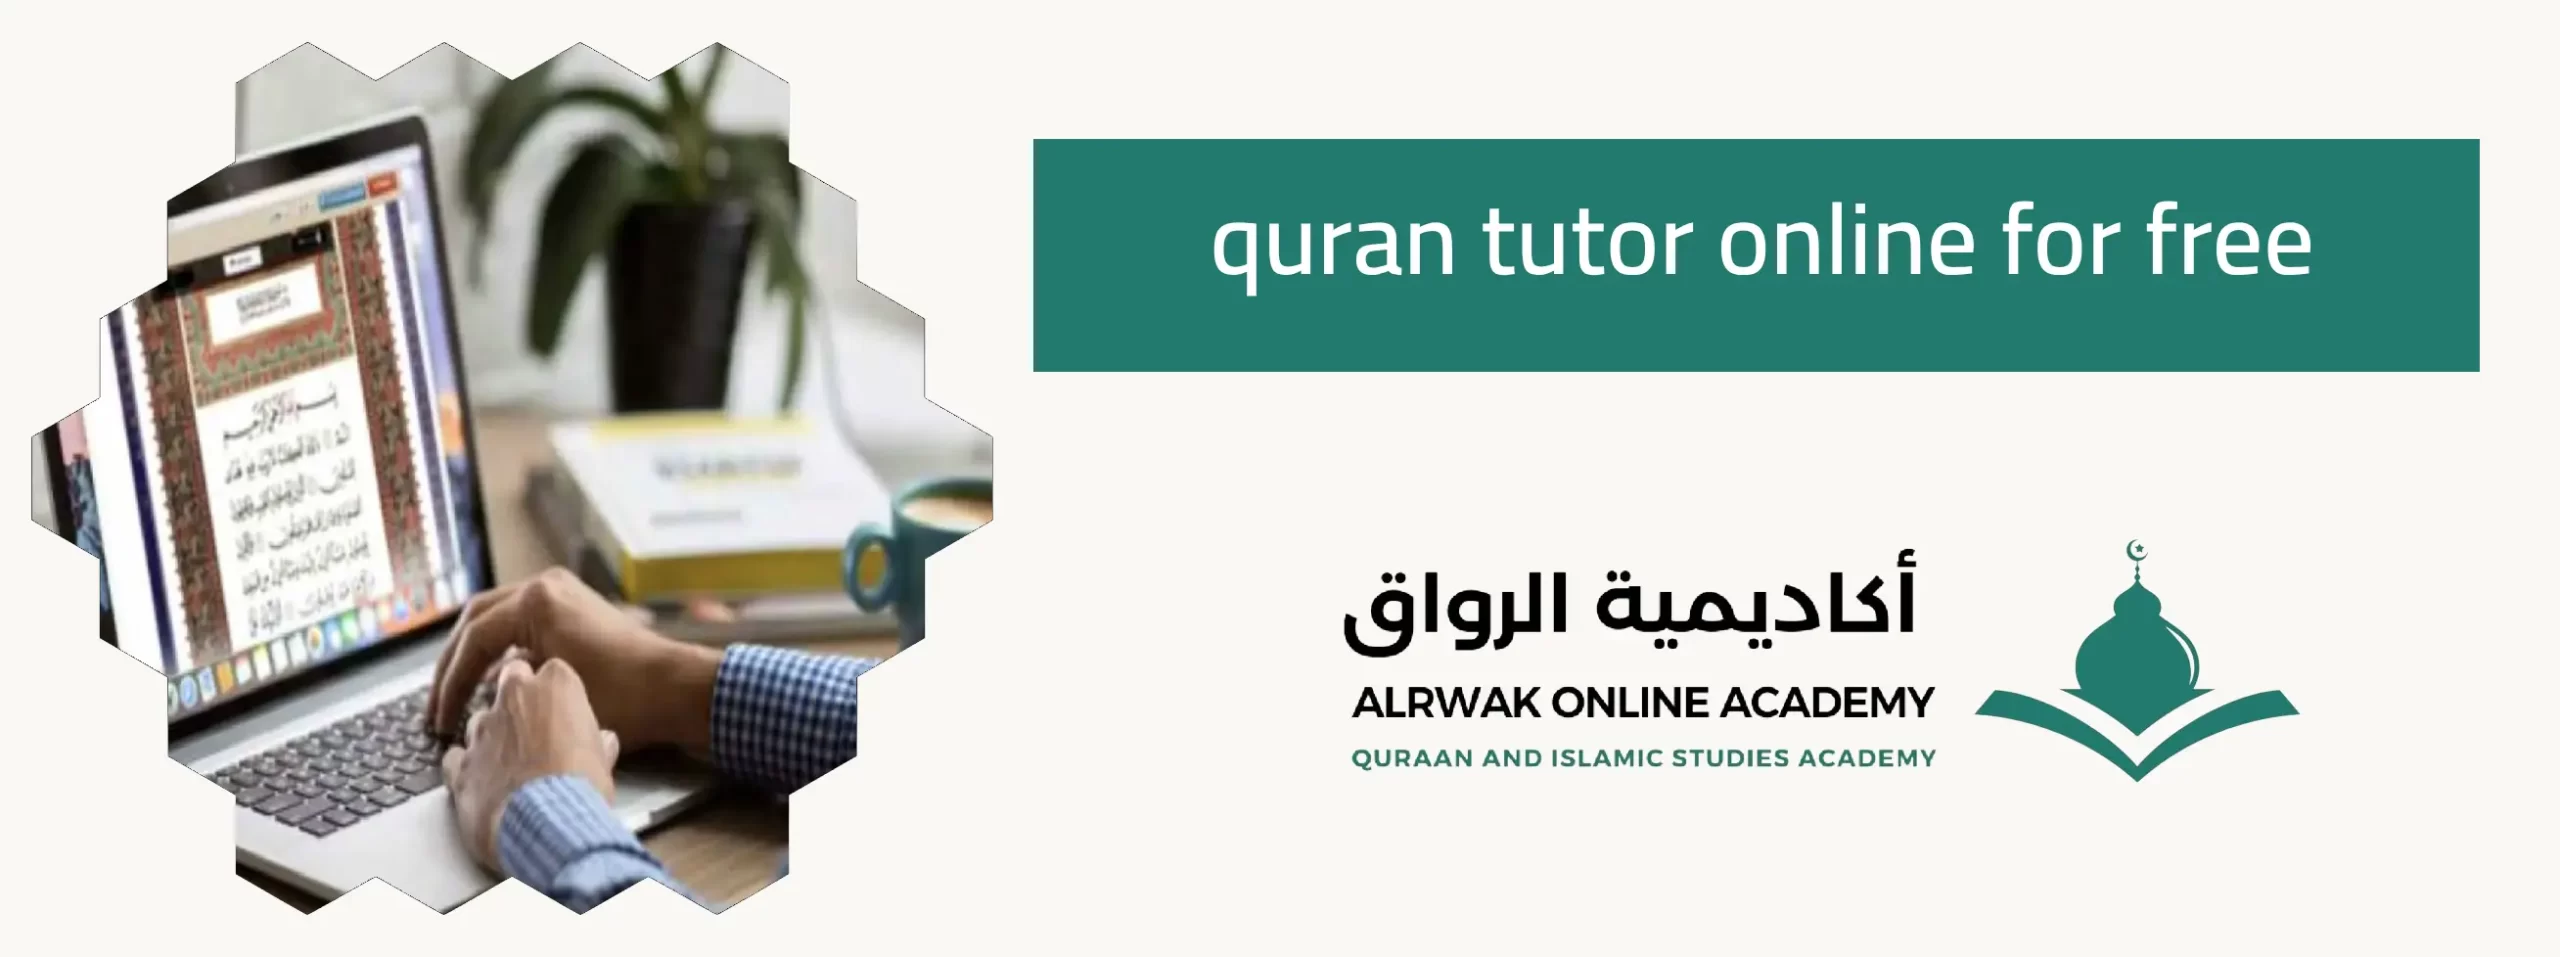 quran tutor online